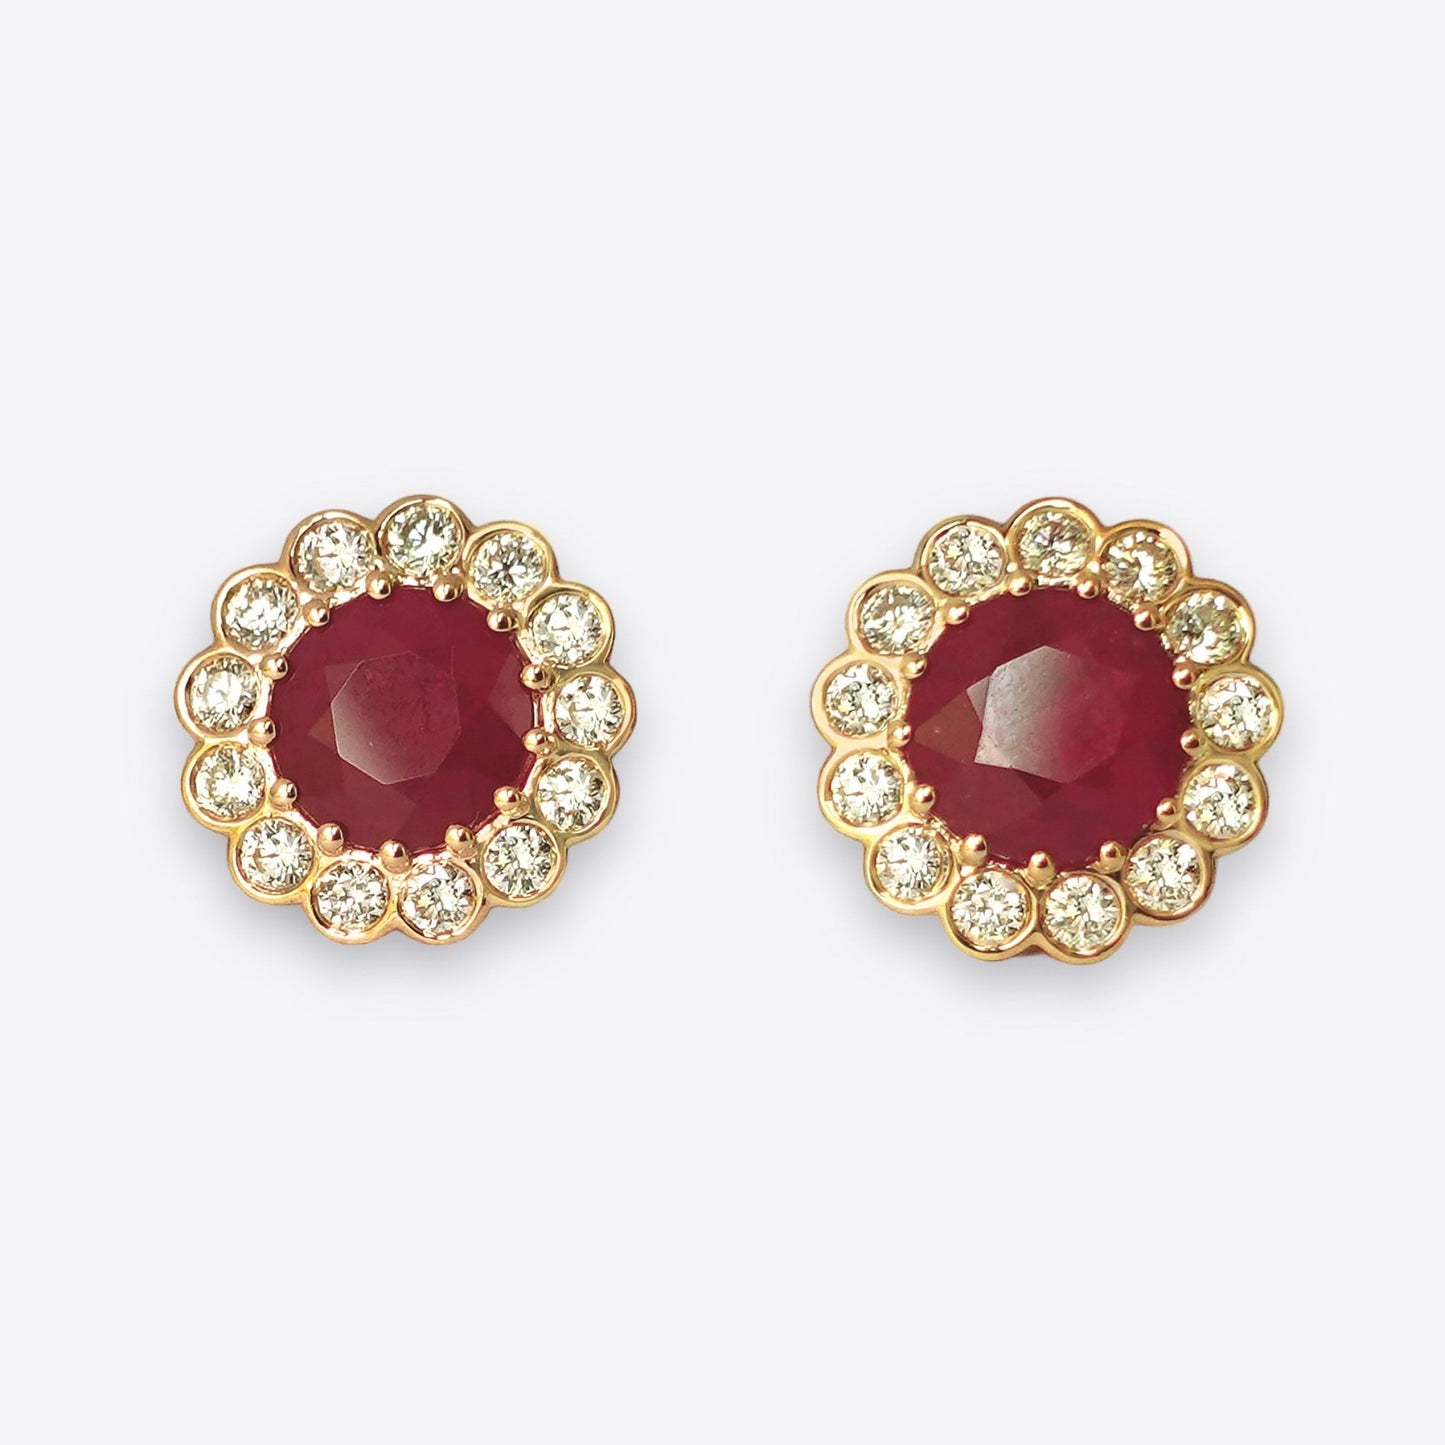 Jouri Earrings in Diamond and Ruby - 18k Gold - Lynor